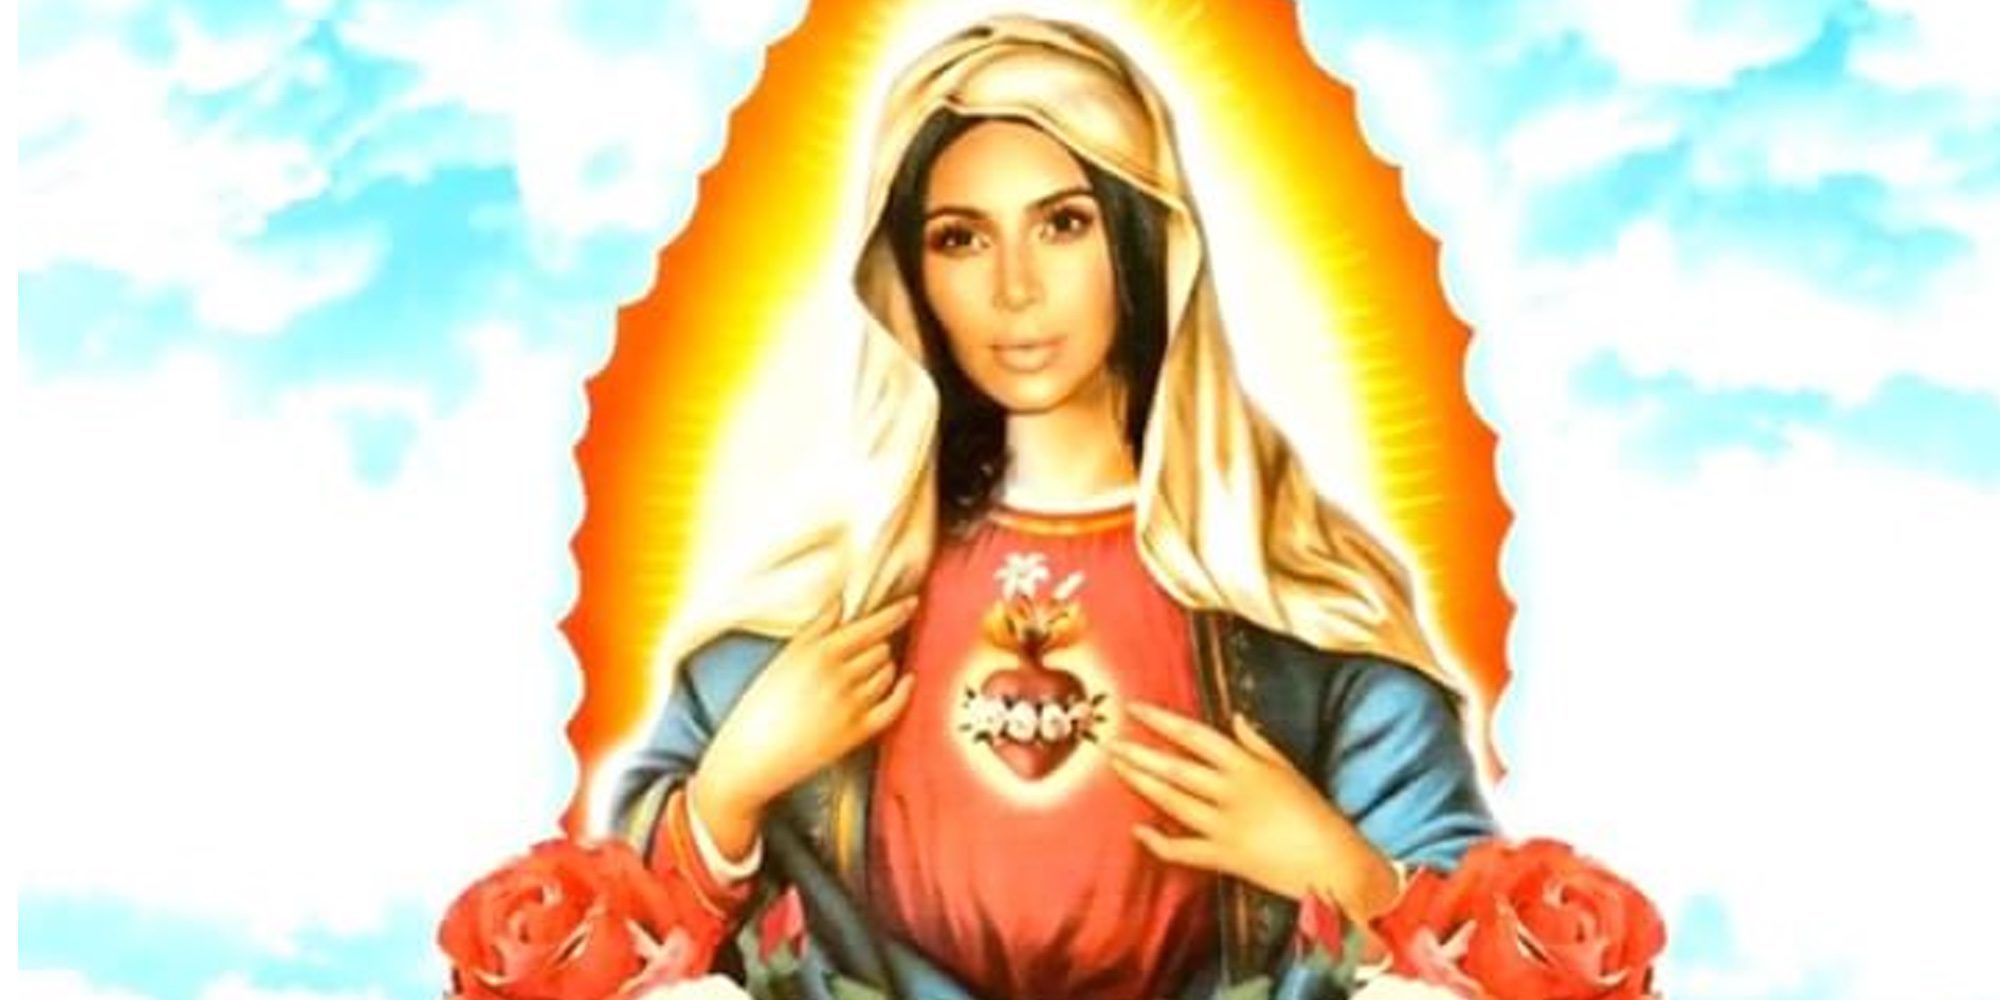 Kim Kardashian sustituye el rostro de la Virgen María por el suyo para autopromocionarse